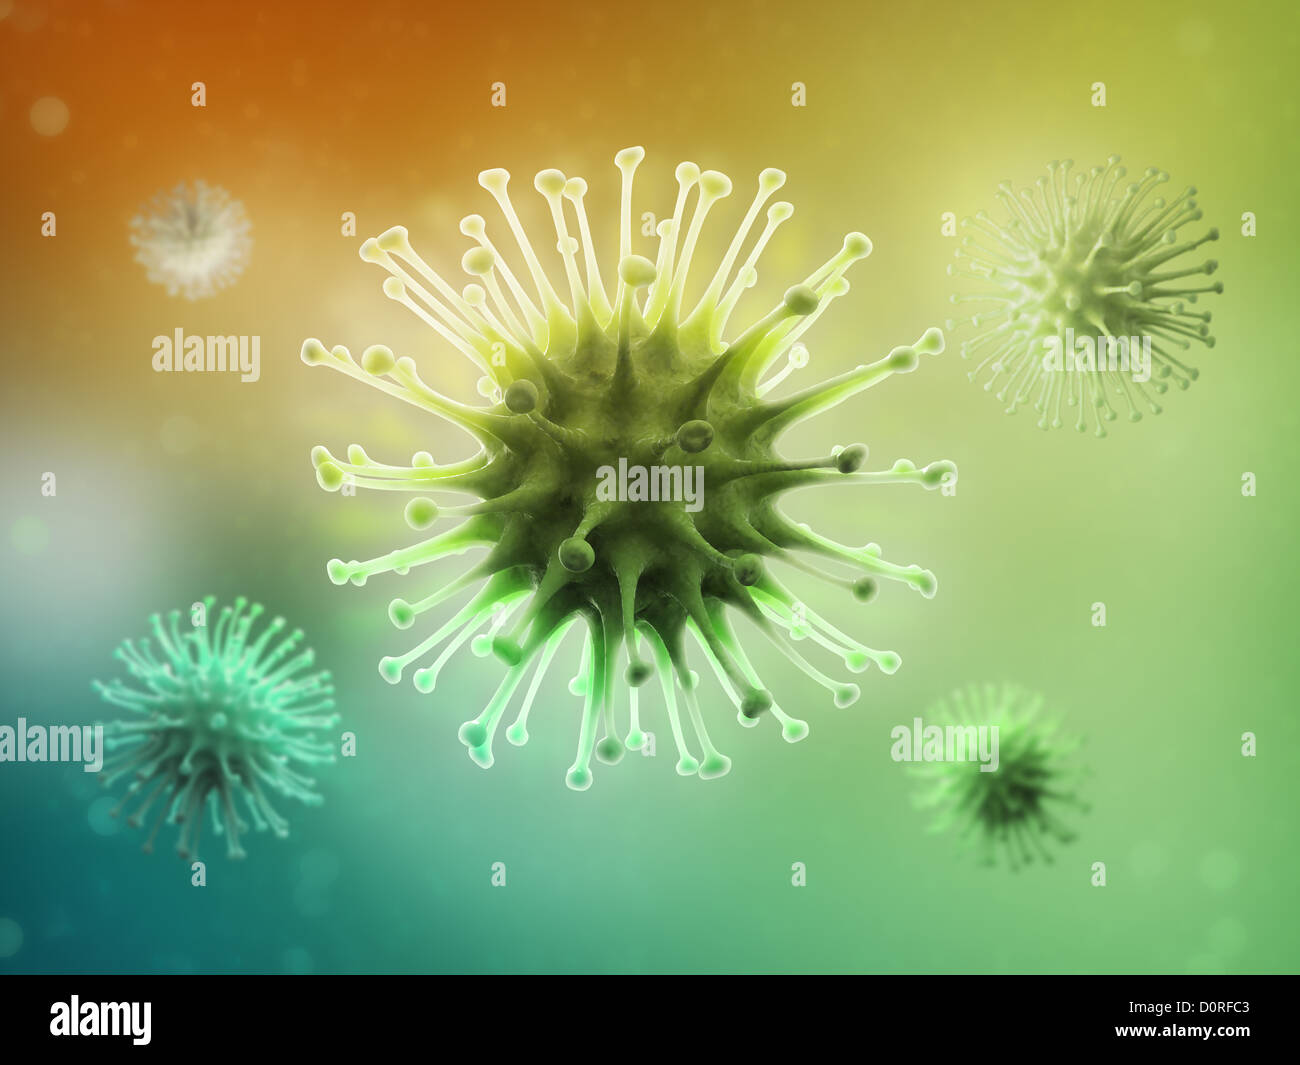 Virus illustrazione scientifica Foto Stock